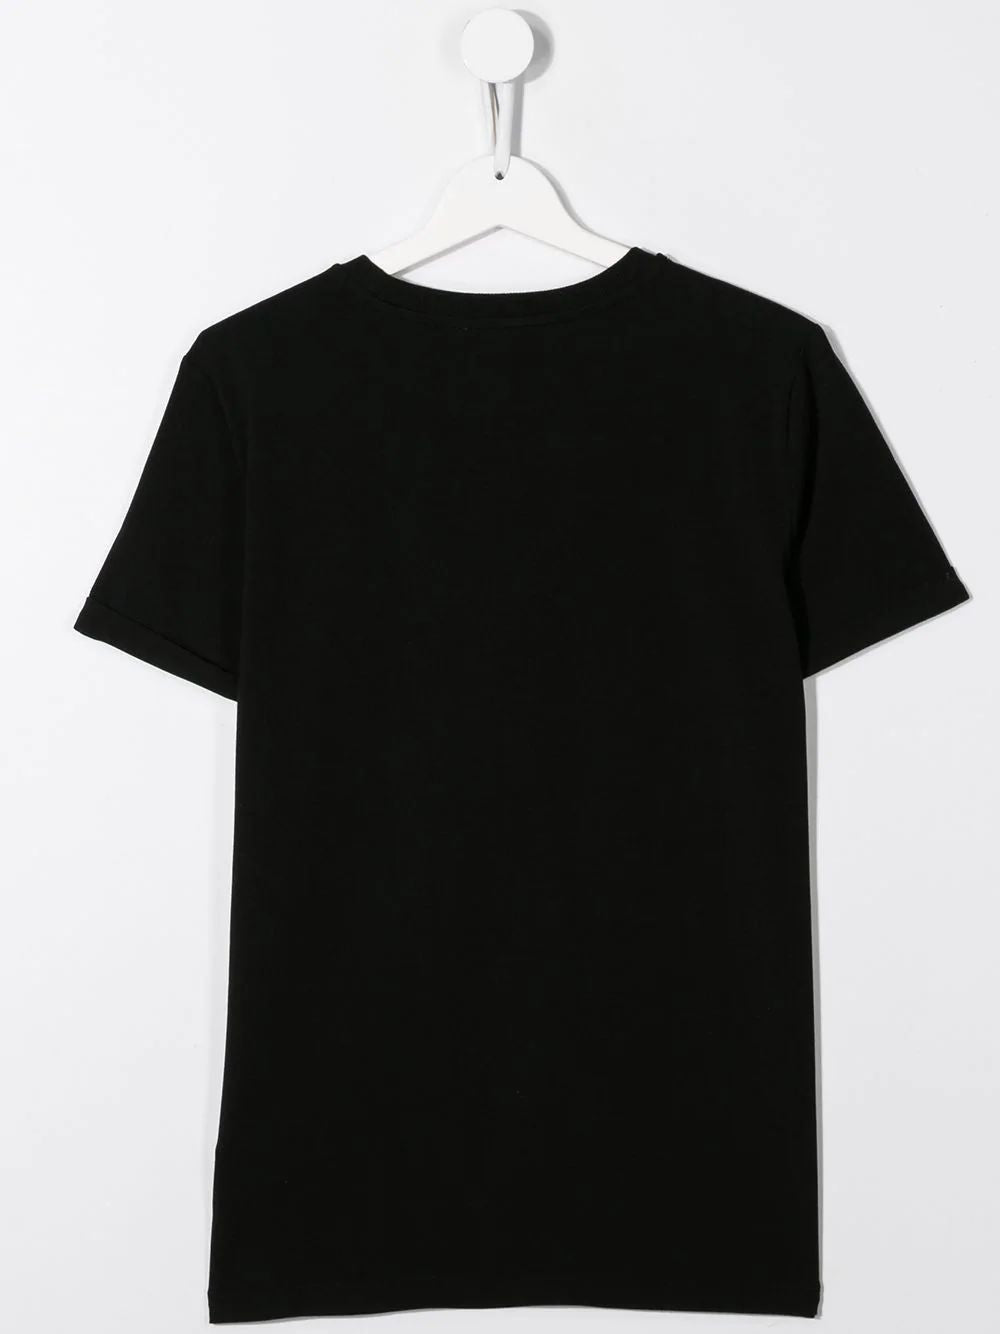 Boys & Girls Black Cotton T-shirt